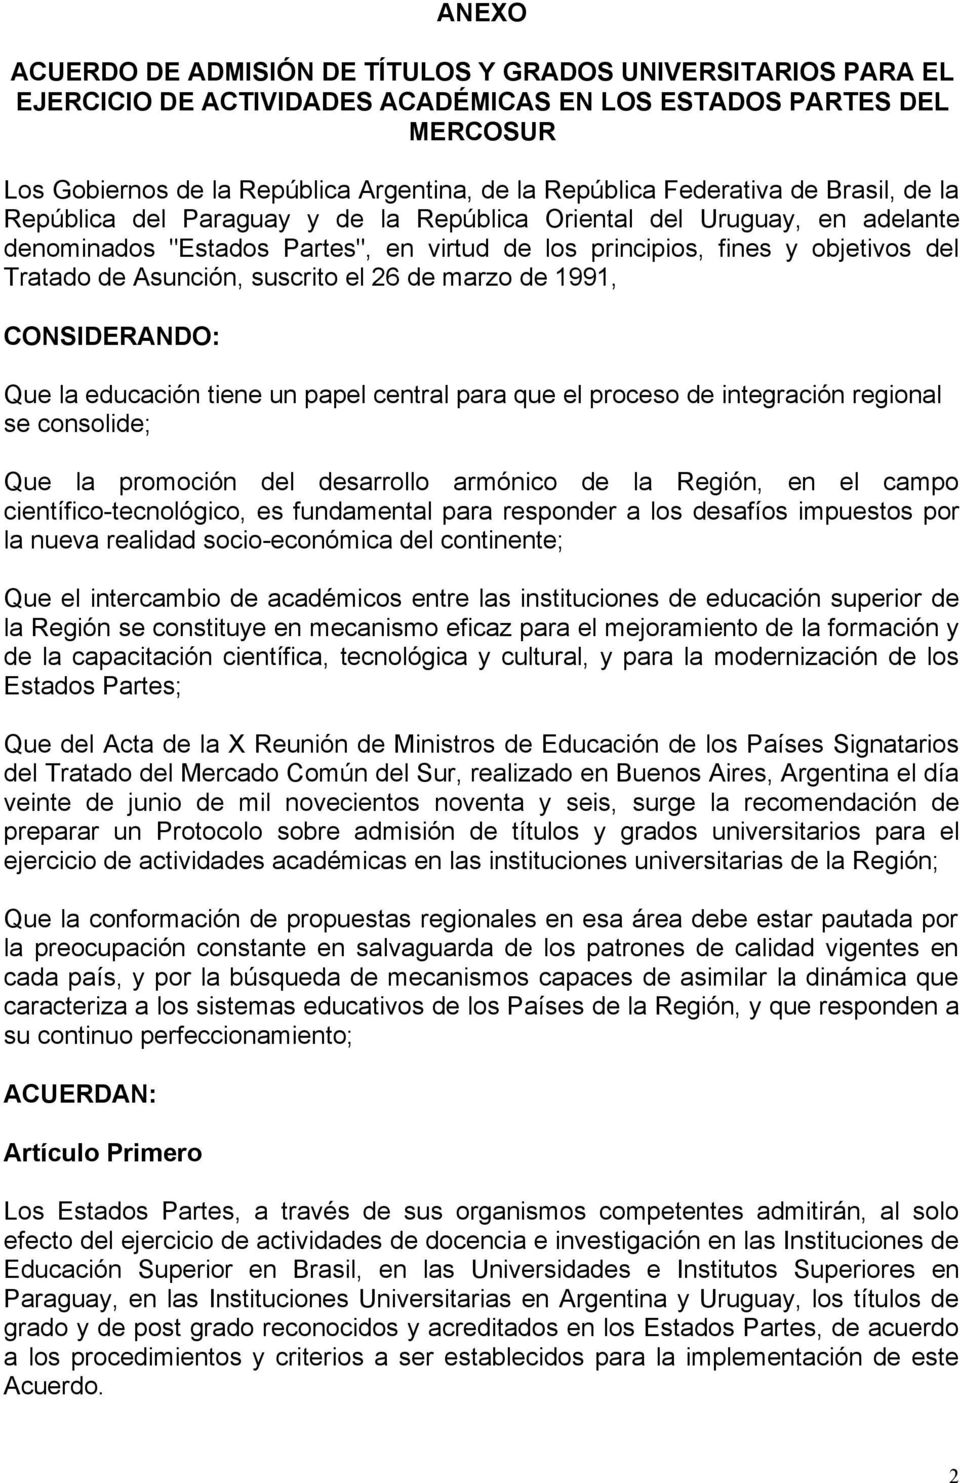 Asunción, suscrito el 26 de marzo de 1991, CONSIDERANDO: Que la educación tiene un papel central para que el proceso de integración regional se consolide; Que la promoción del desarrollo armónico de